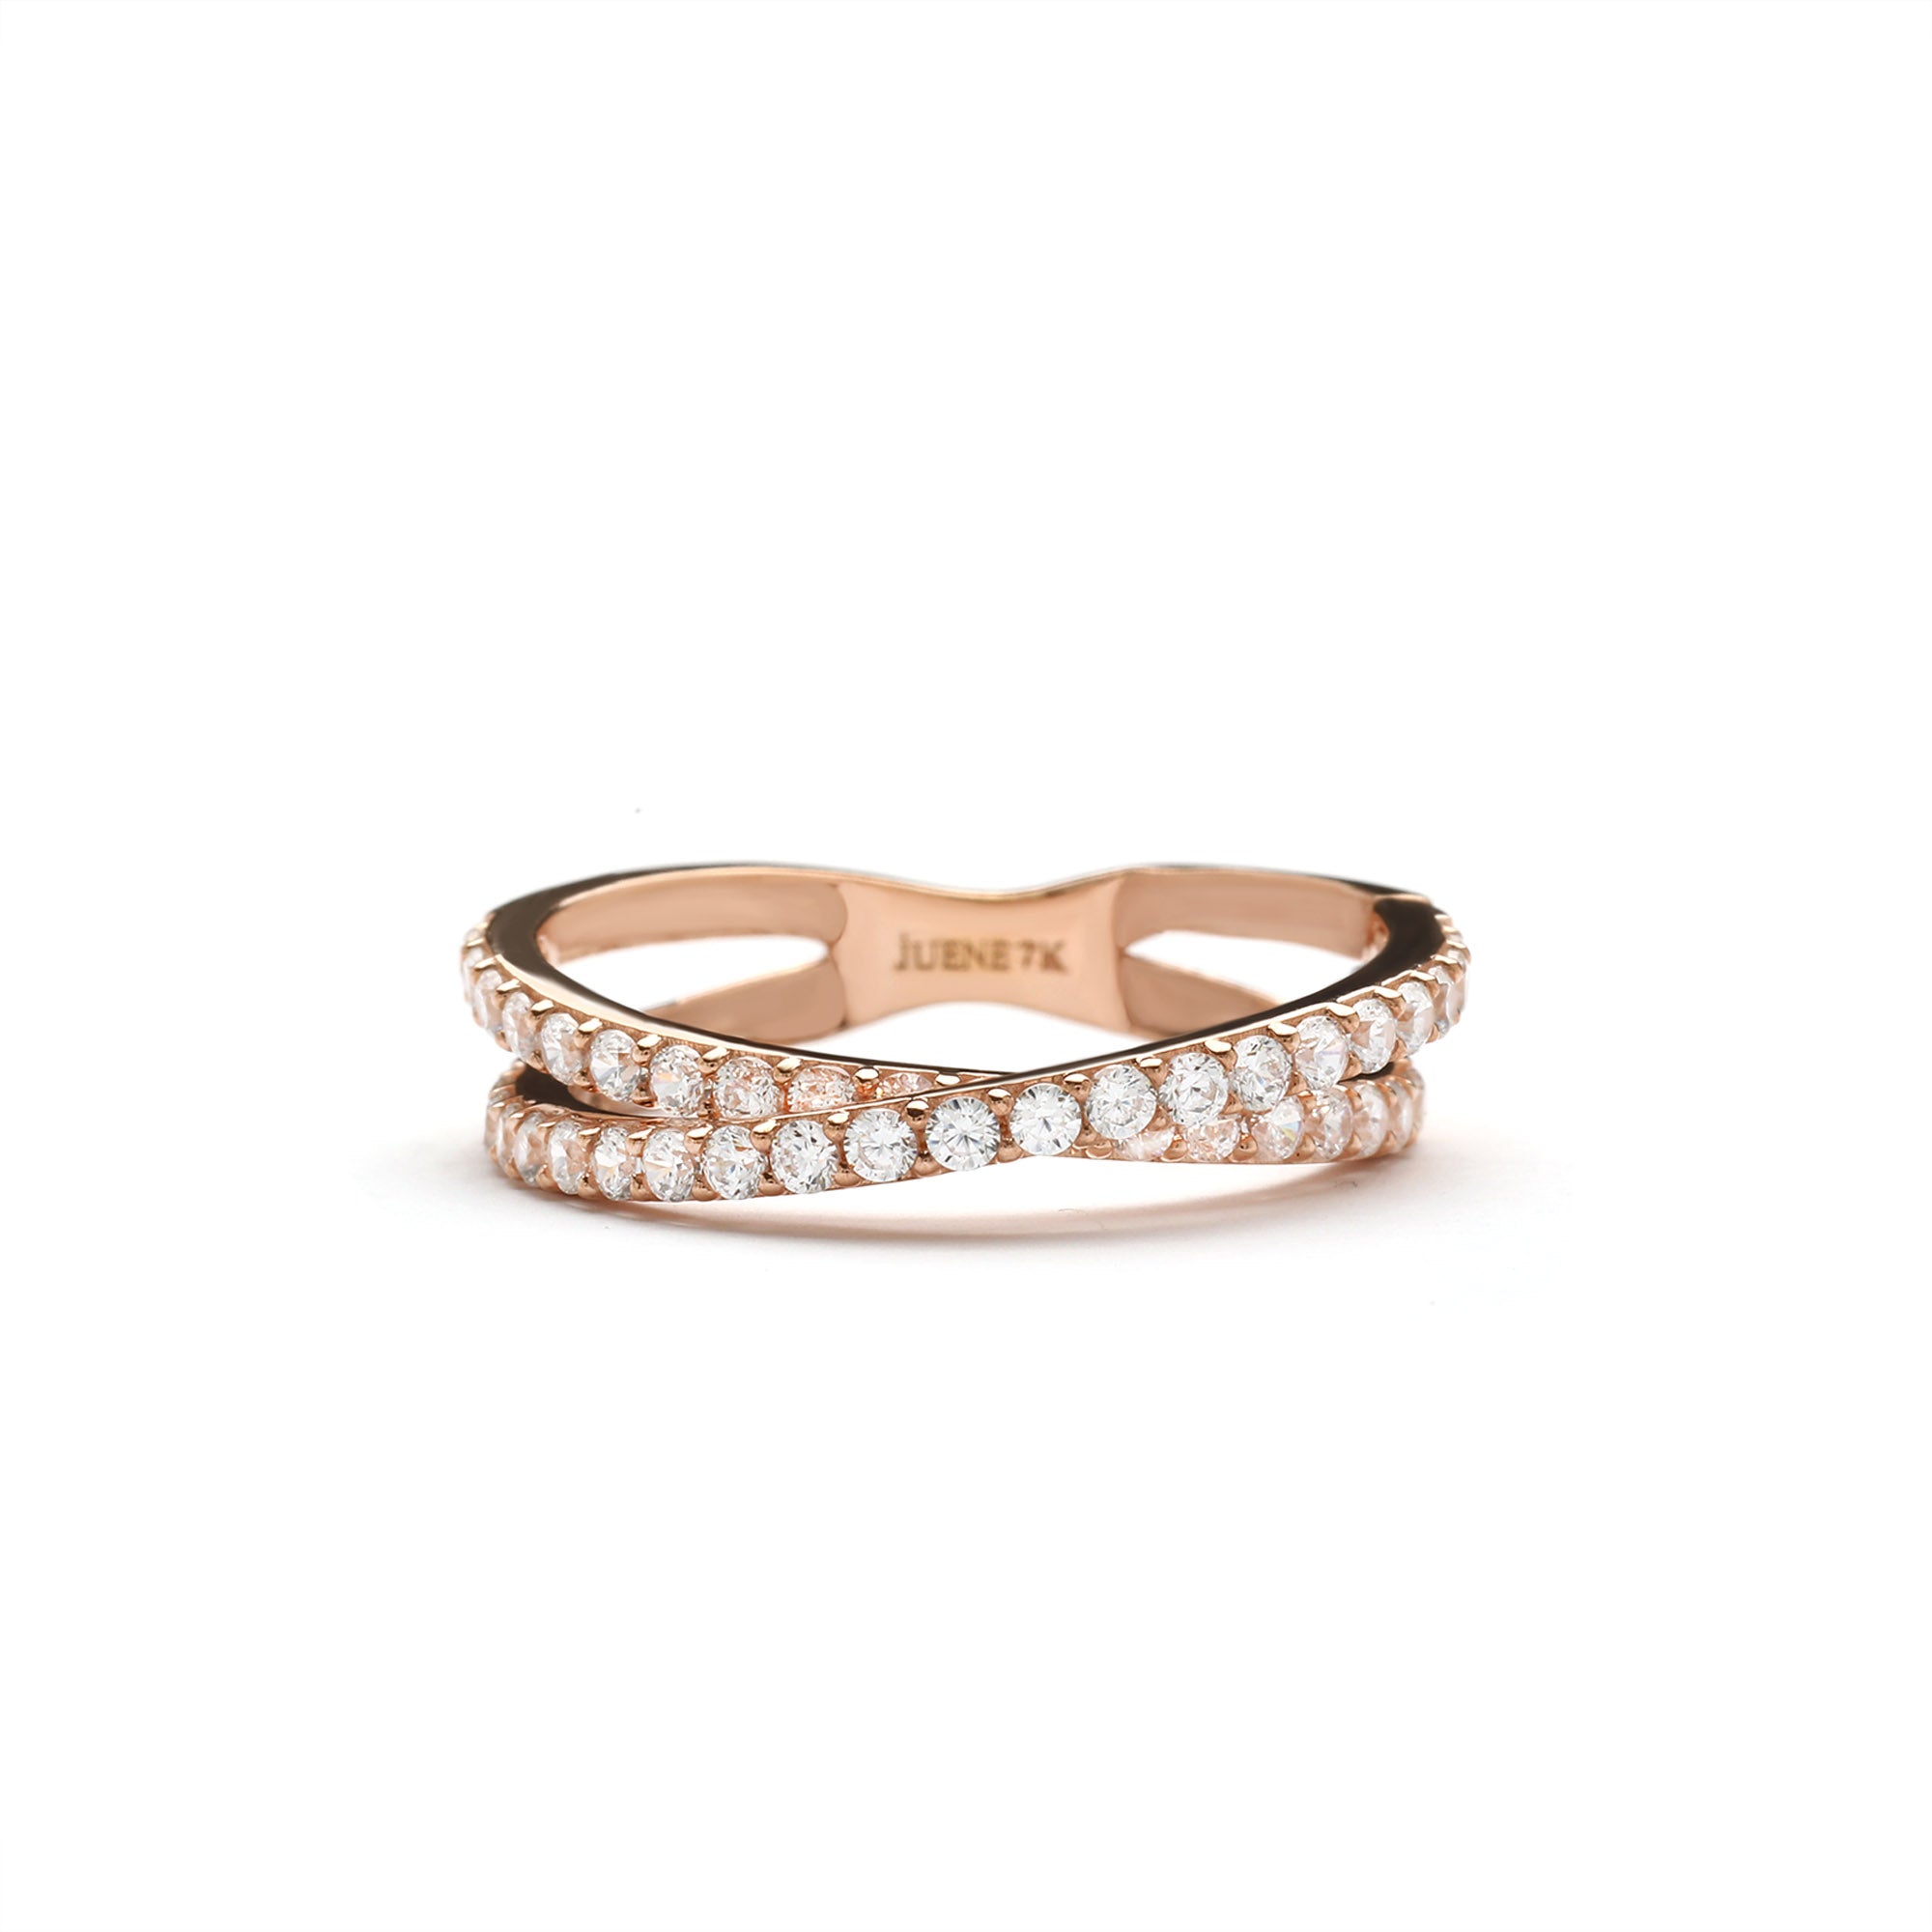 Irena Rings 02 - Juene Jewelry